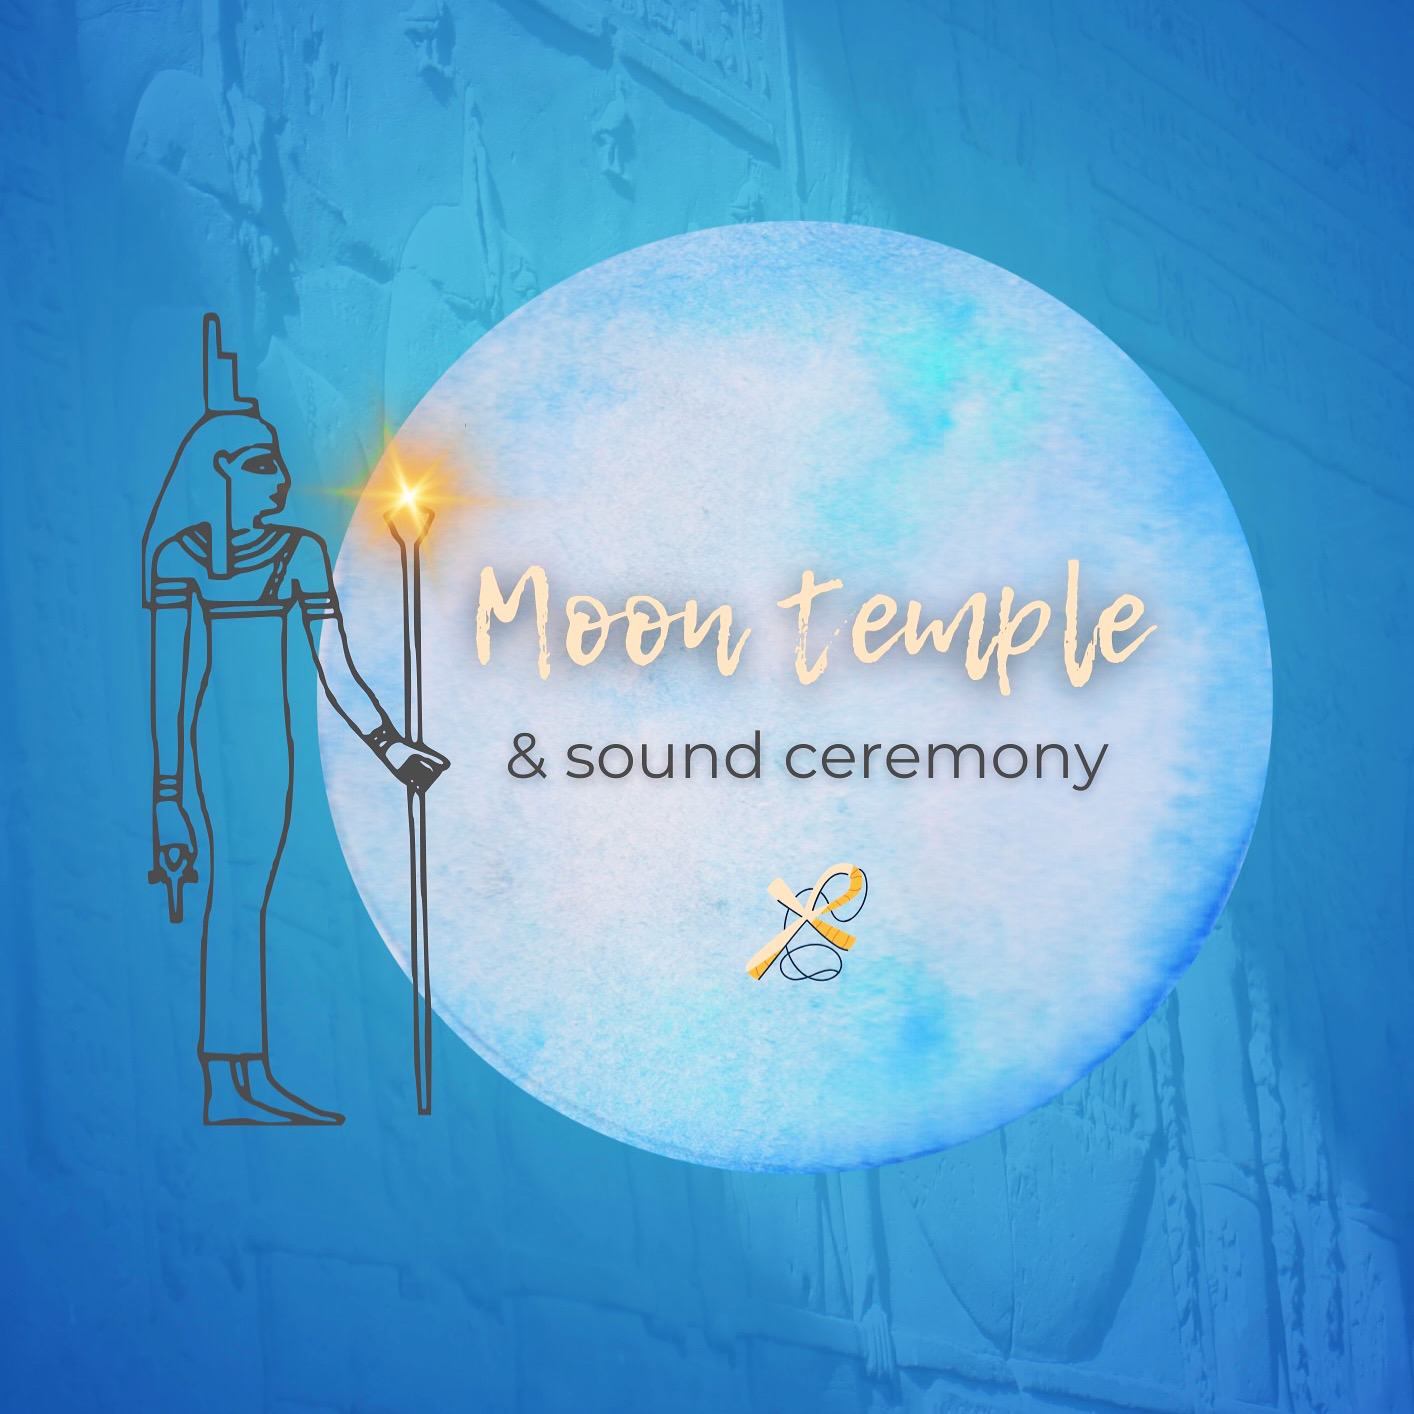 Moon temple & sound ceremony